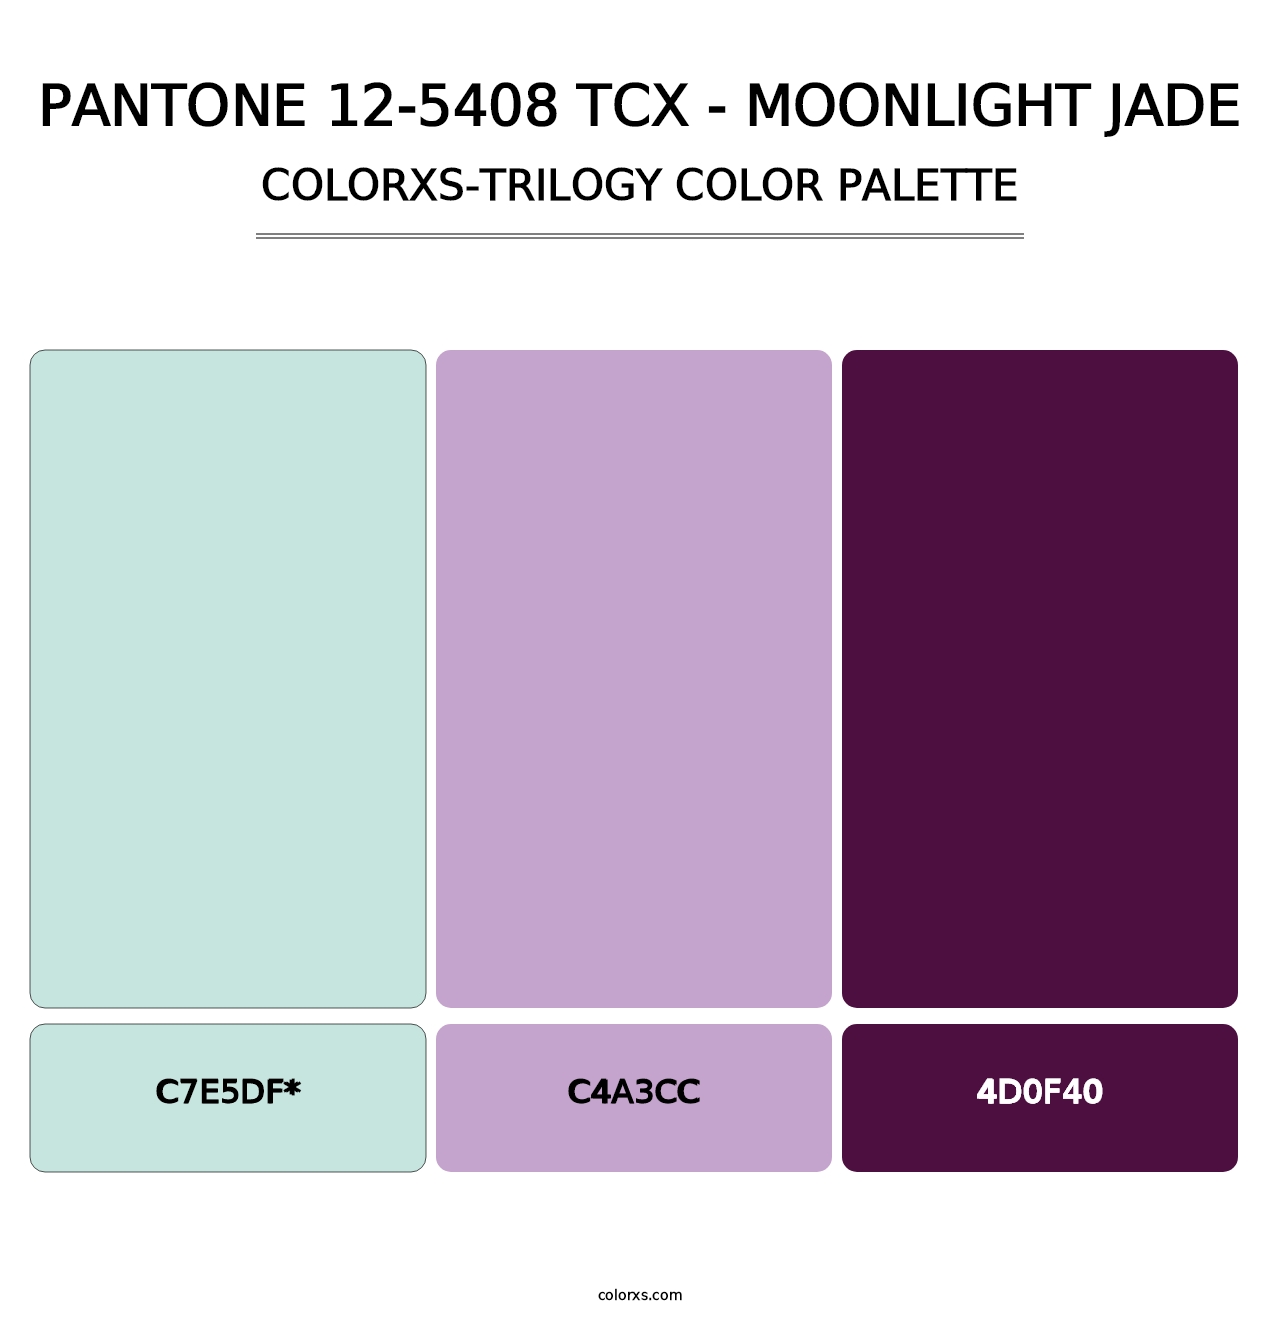 PANTONE 12-5408 TCX - Moonlight Jade - Colorxs Trilogy Palette